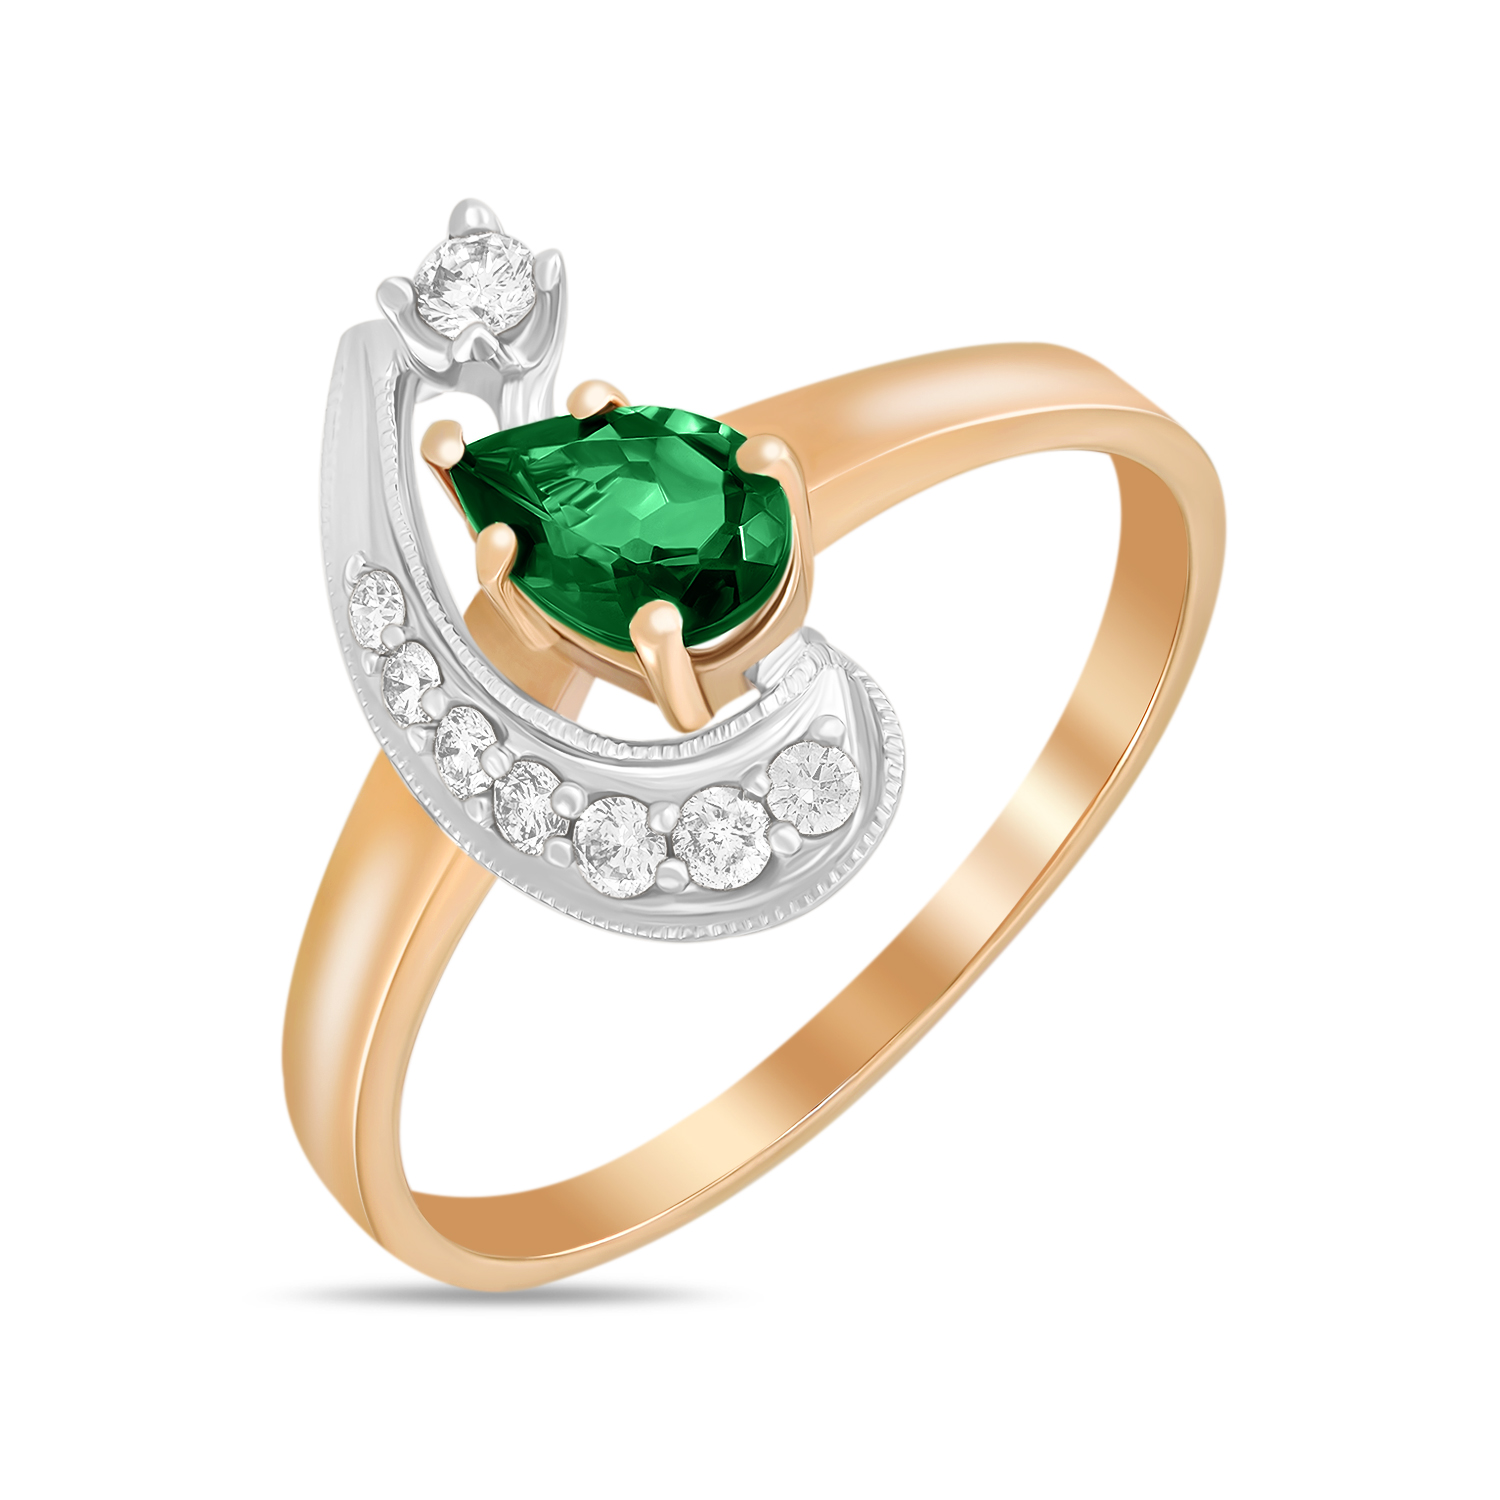 Кольца МЮЗ Золотое кольцо с бриллиантами и турмалином кольца мюз золотое кольцо с топазом бриллиантами турмалином и хромдиопсидами